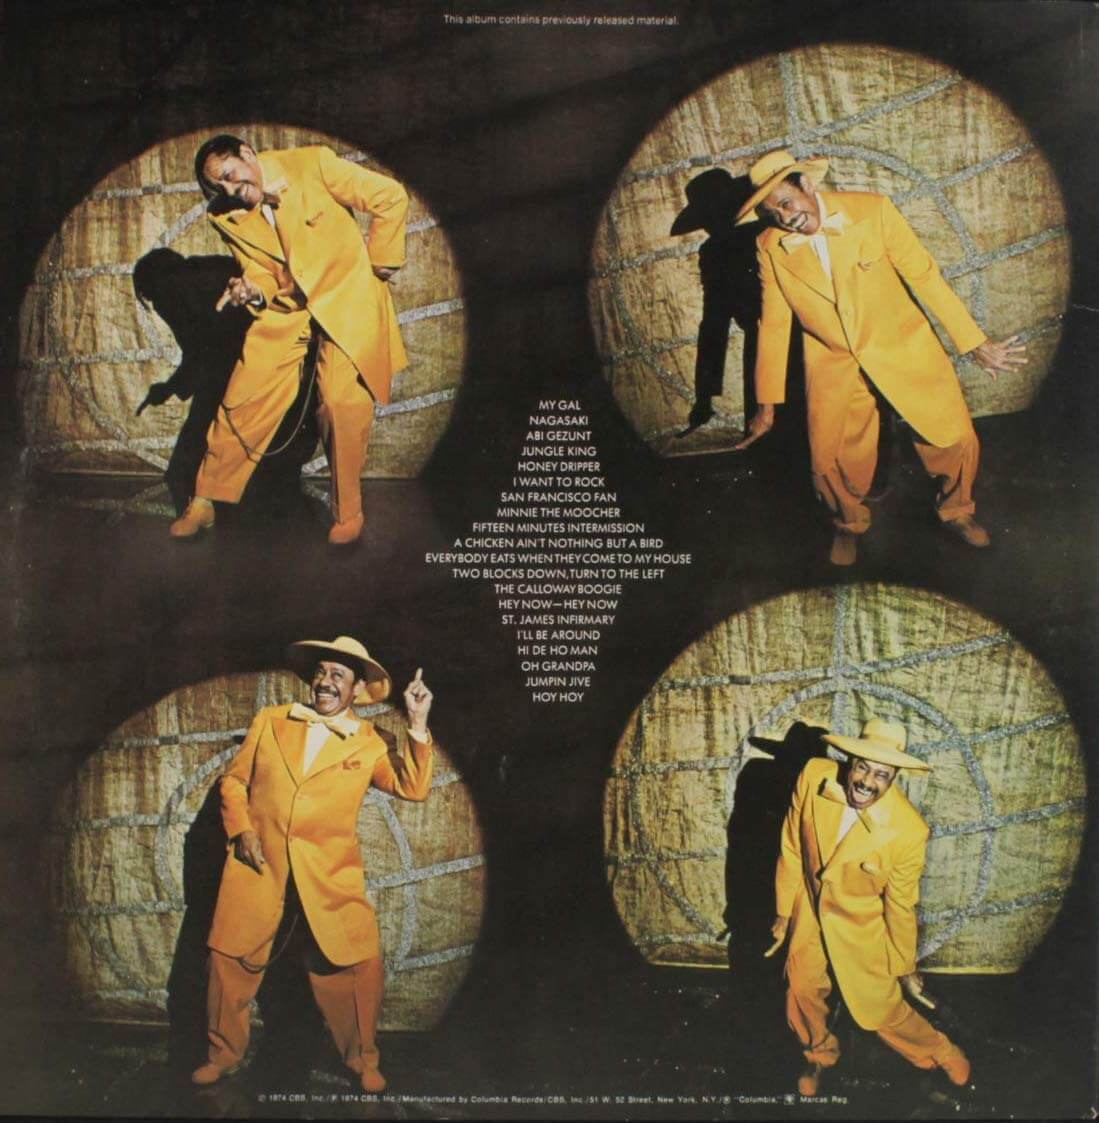 1974 Cab Calloway – Hi De Ho Man CBS LP2.jpg